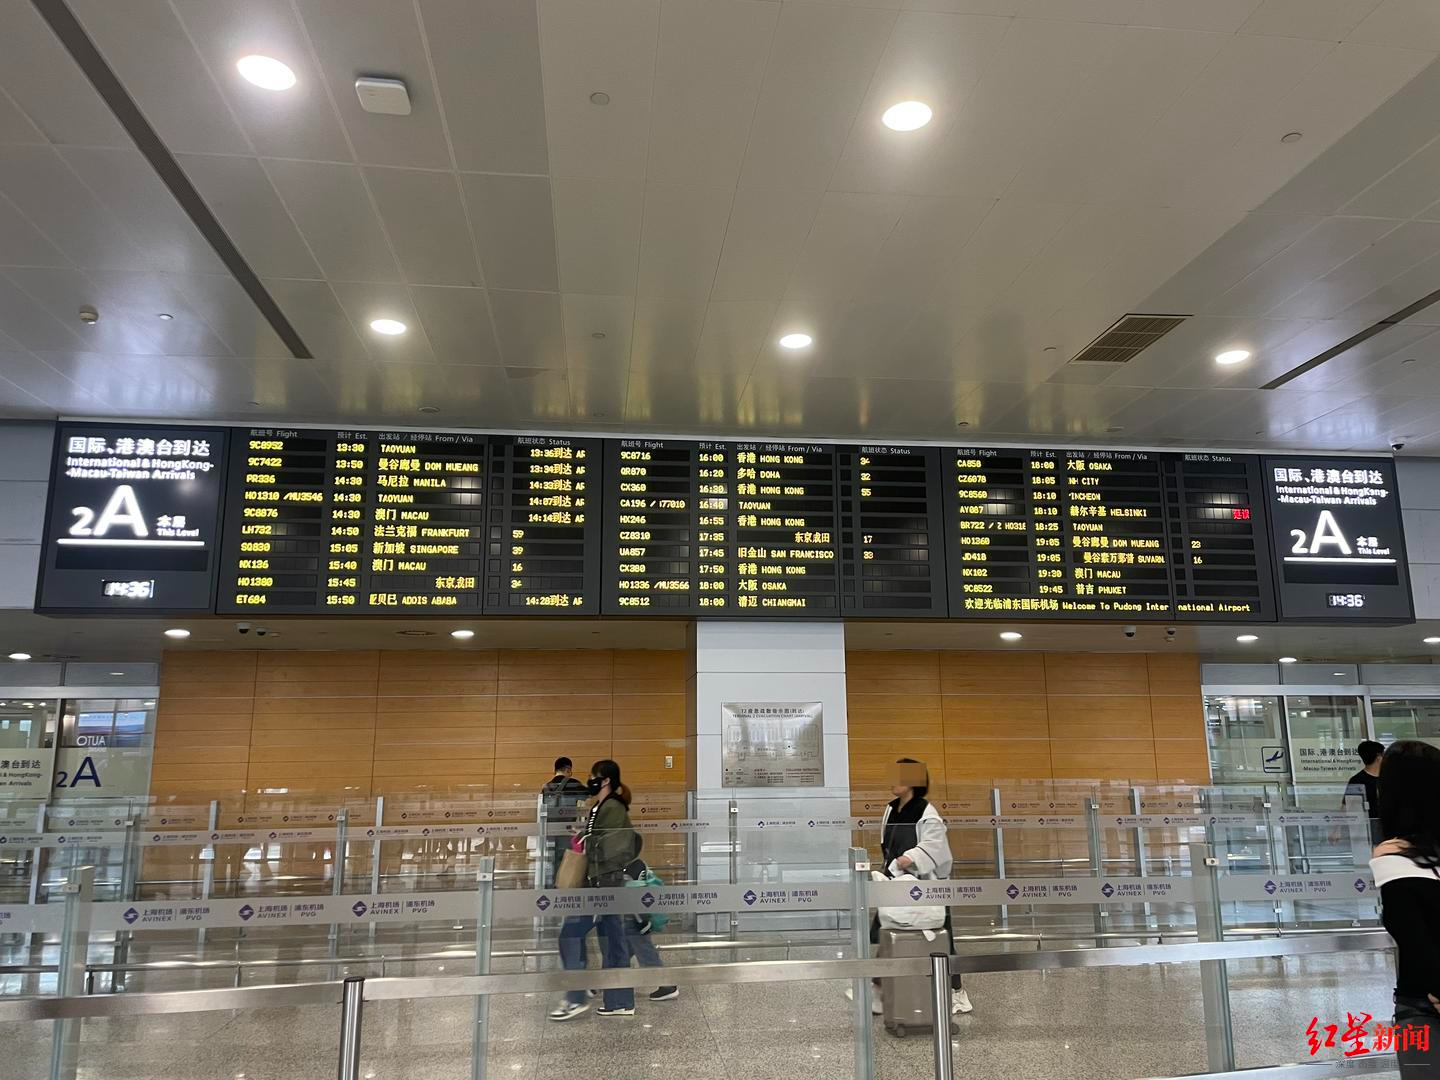 浦东国际机场t2航站楼到达层